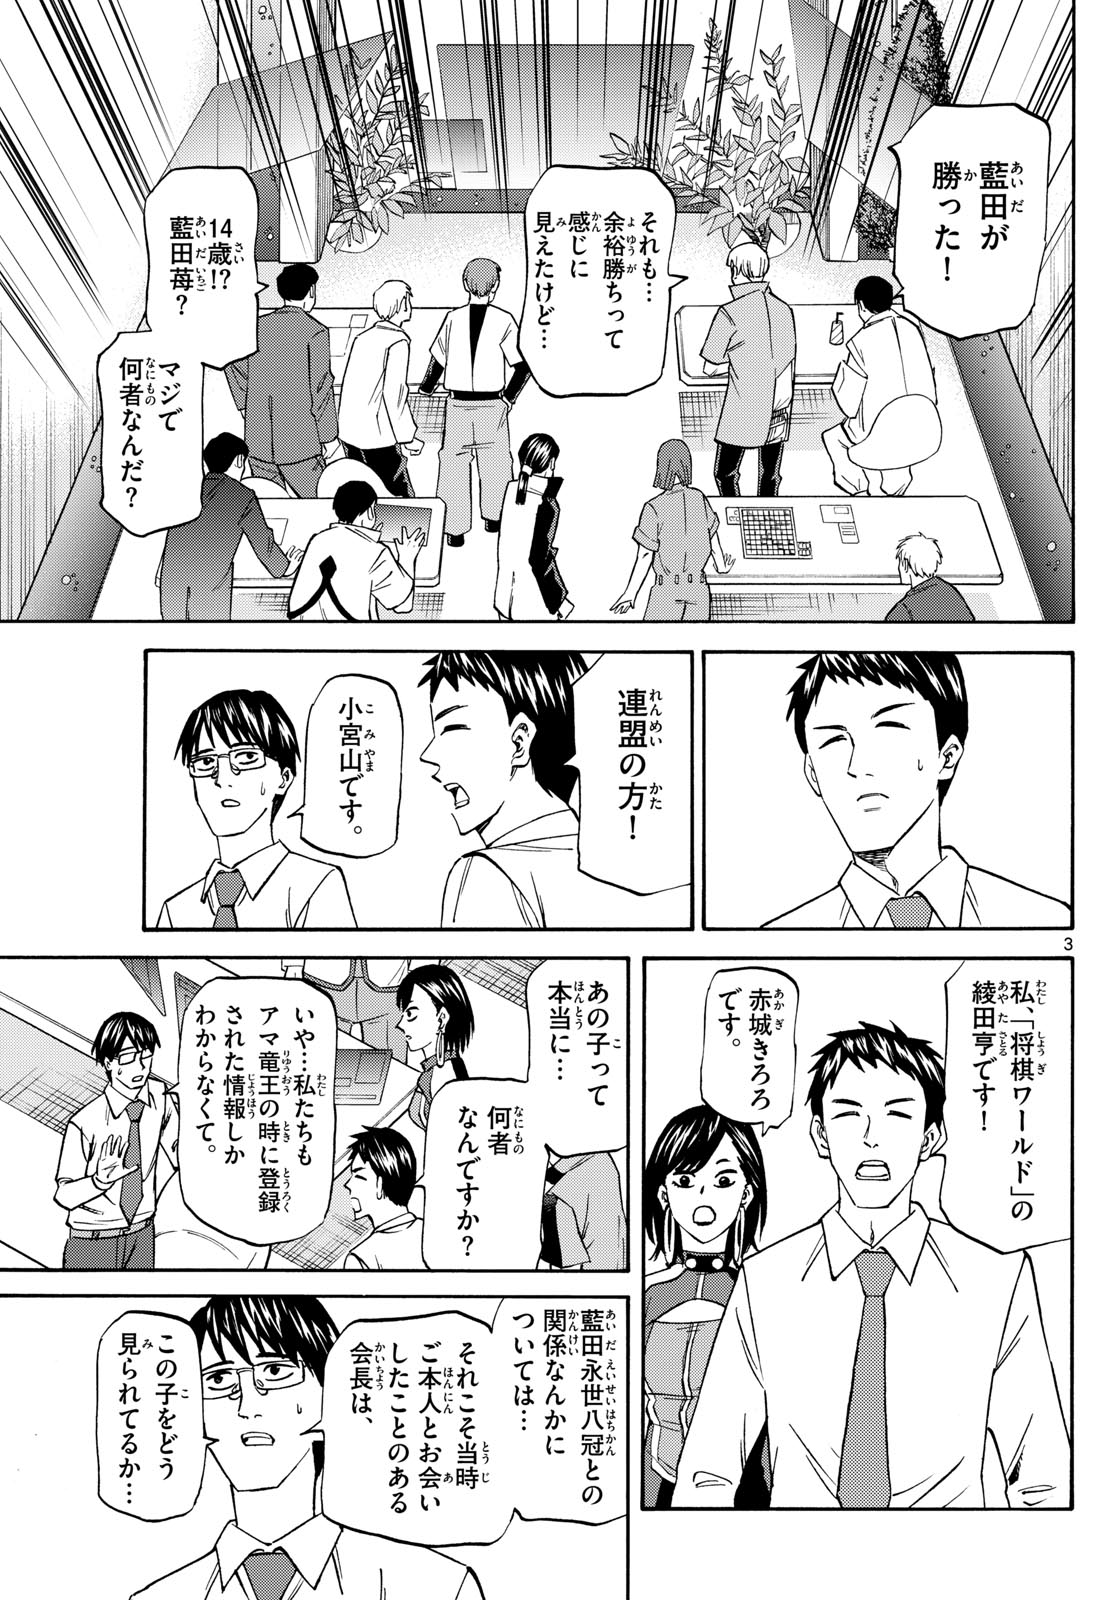 Tatsu to Ichigo - Chapter 190 - Page 3